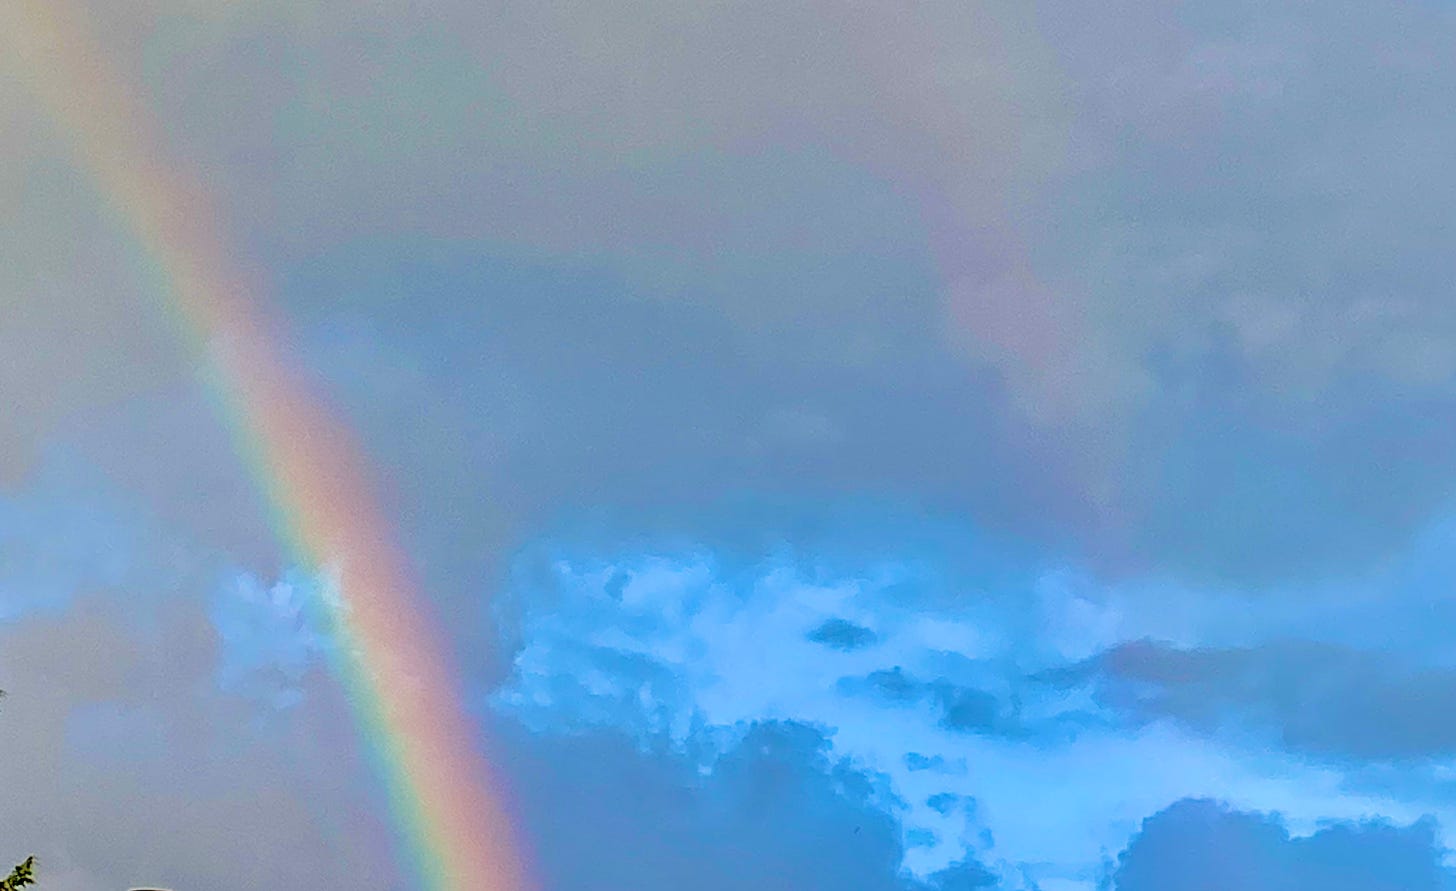 Double rainbows against cloudy sky.